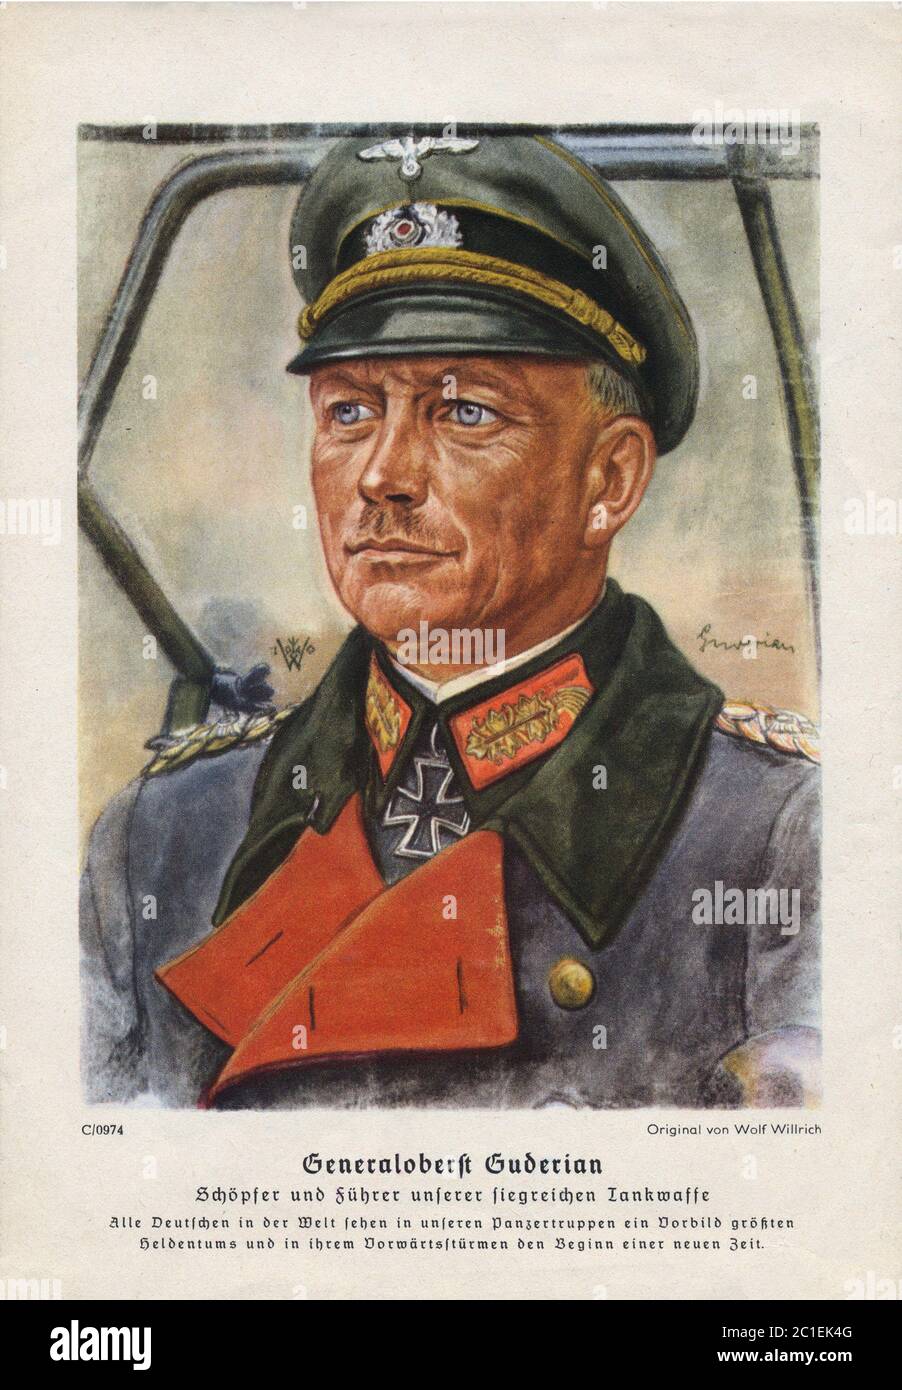 Heinz Wilhelm Guderian (1888 – 1954) è stato un generale tedesco durante la seconda guerra mondiale che, dopo la guerra, divenne un memoriale di successo. Un pioniere precoce e. Foto Stock